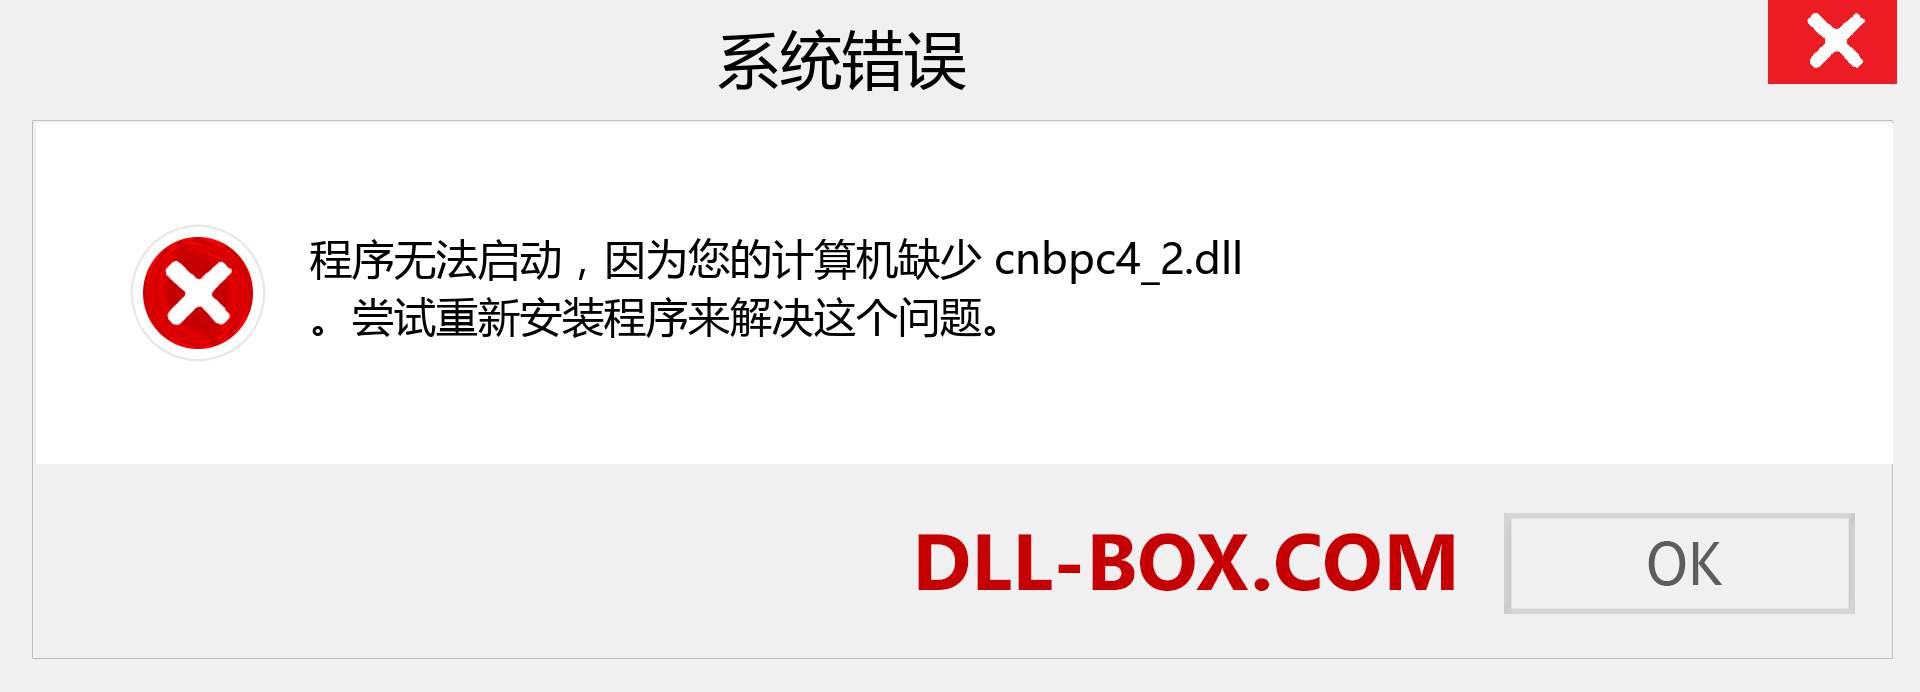 cnbpc4_2.dll 文件丢失？。 适用于 Windows 7、8、10 的下载 - 修复 Windows、照片、图像上的 cnbpc4_2 dll 丢失错误